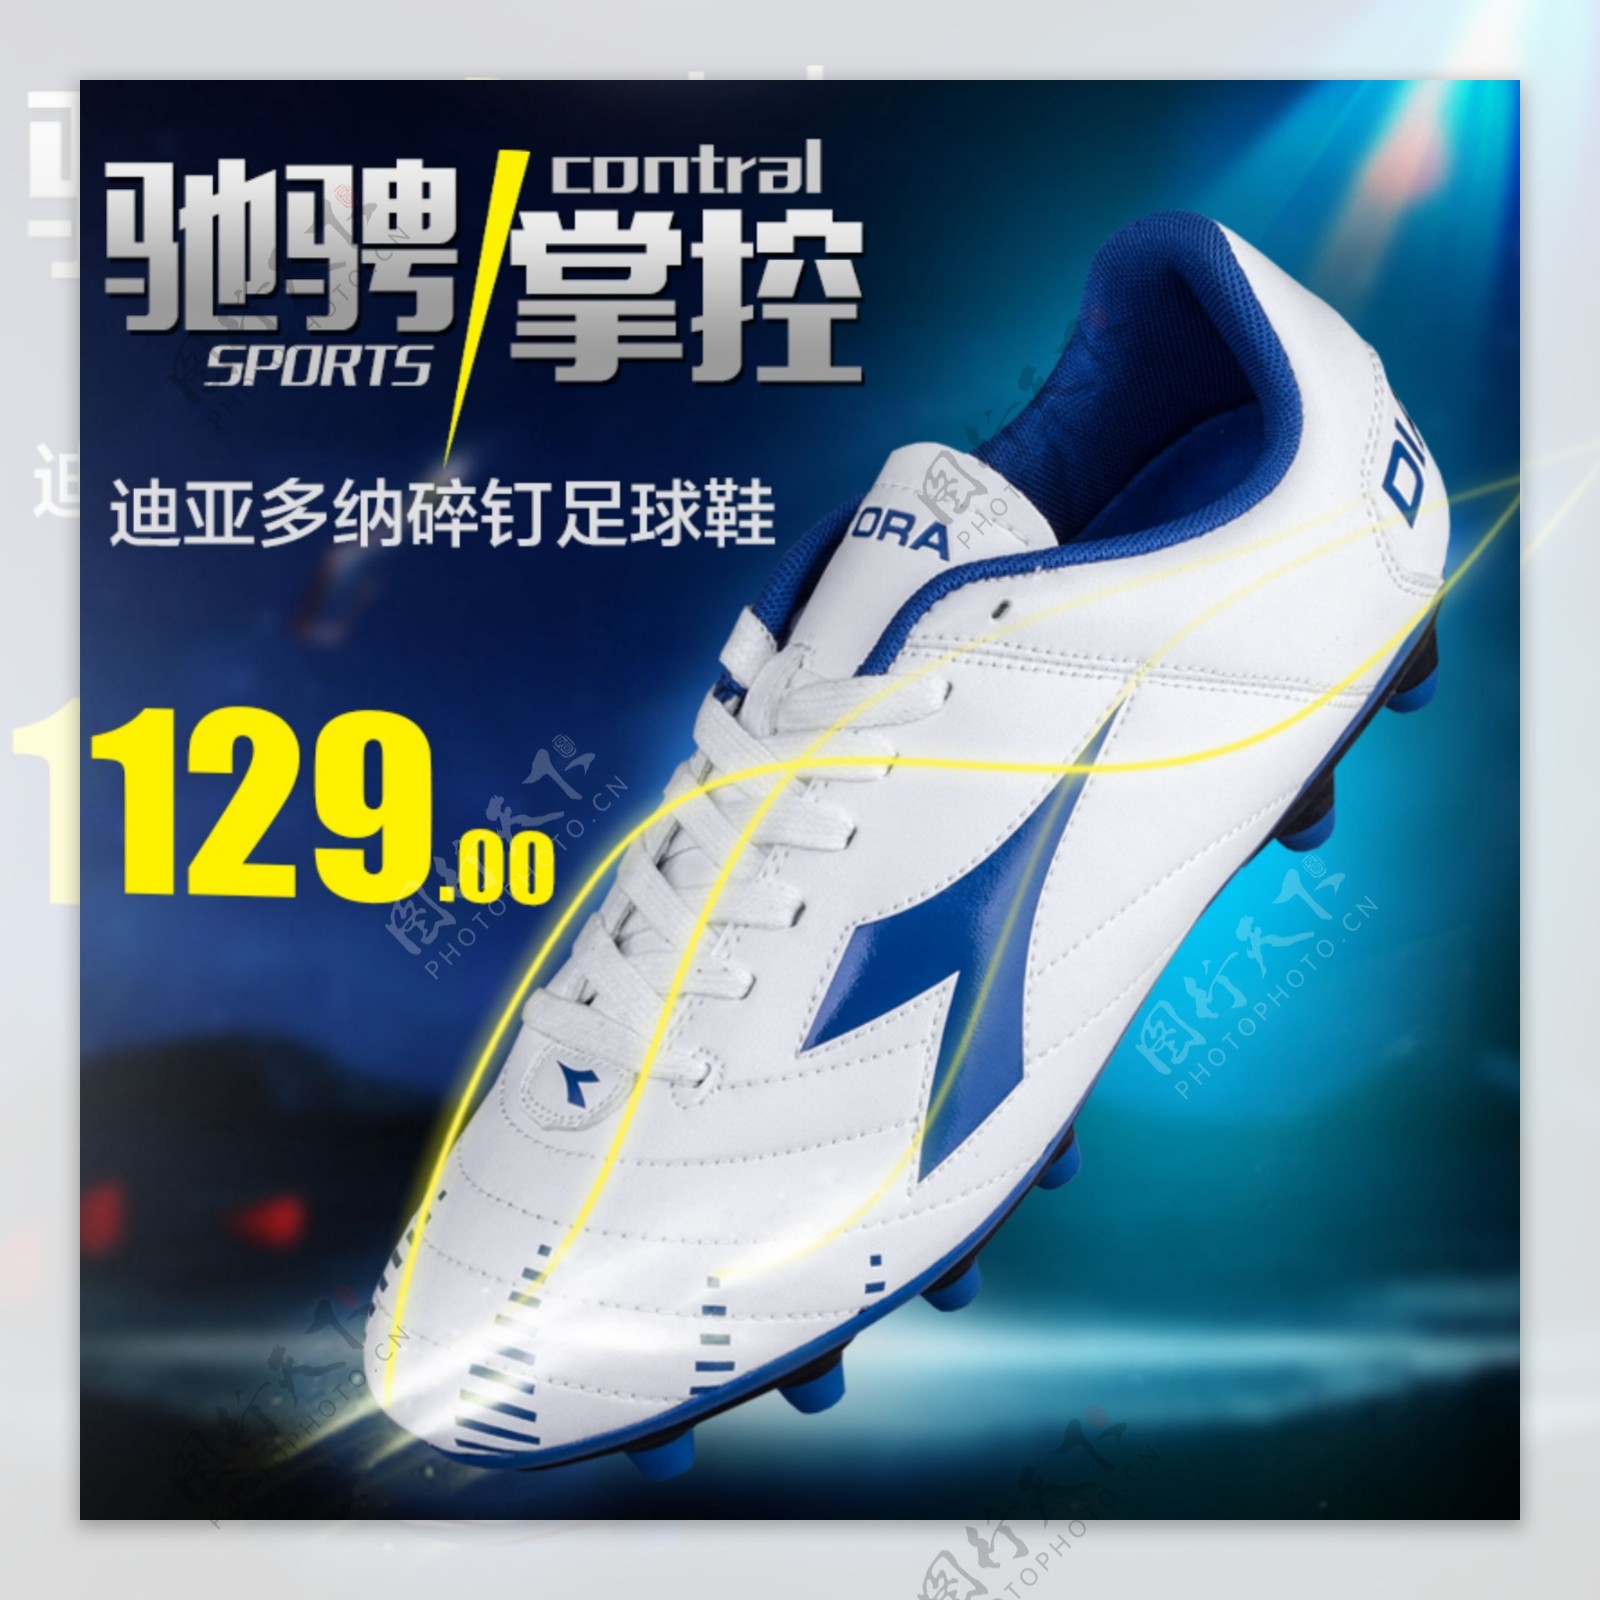 运动足球鞋直通车推广图广告图